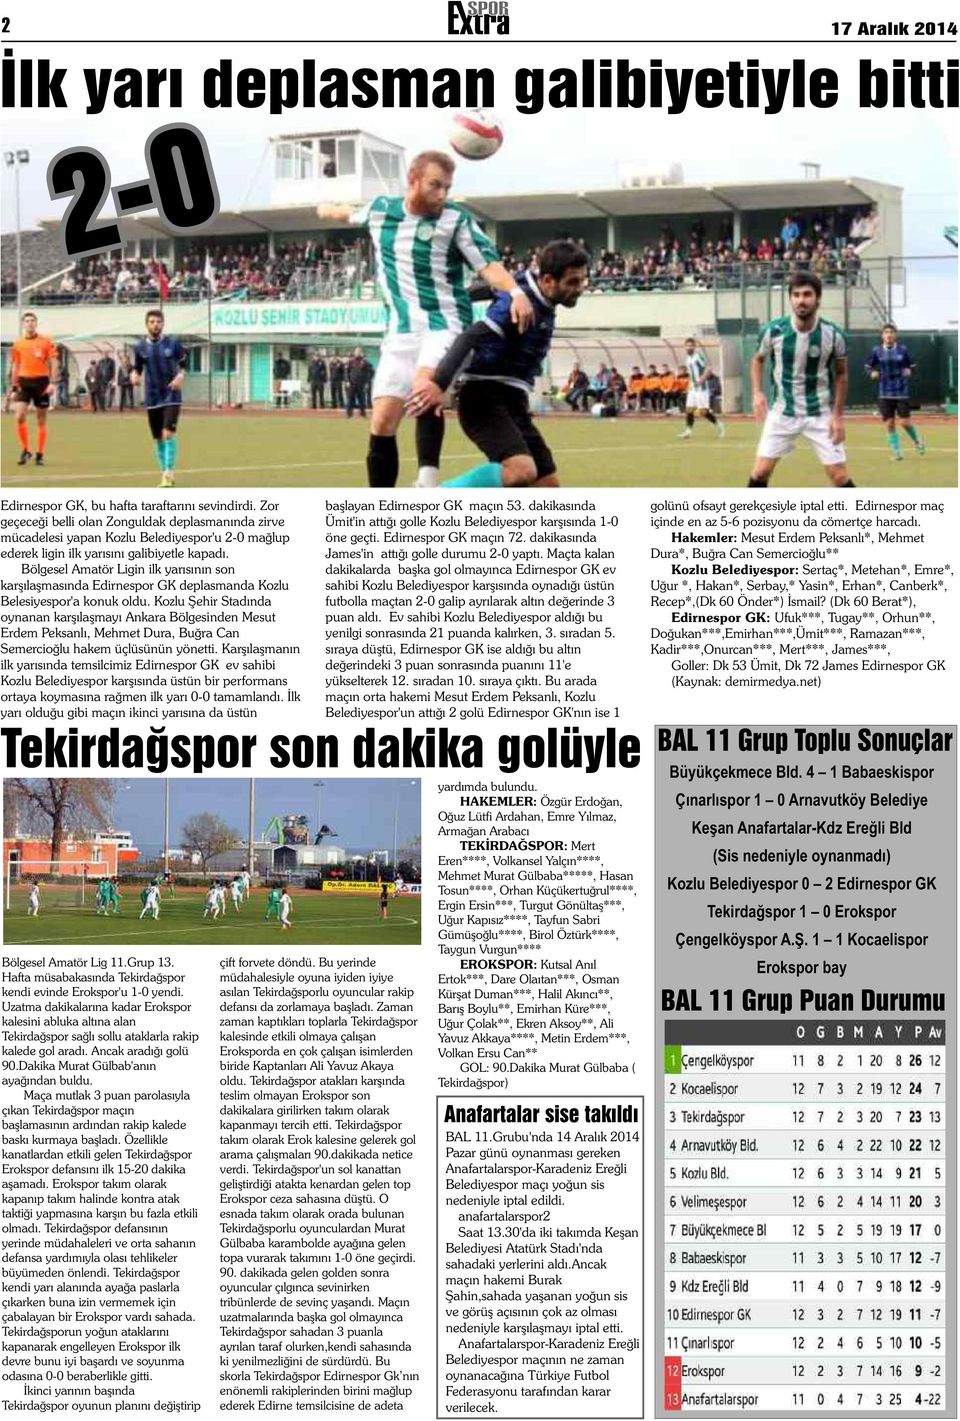 Edirnespor maç geçeceği belli olan Zonguldak deplasmanında zirve Ümit'in attığı golle Kozlu Belediyespor karşısında 1-0 içinde en az 5-6 pozisyonu da cömertçe harcadı.